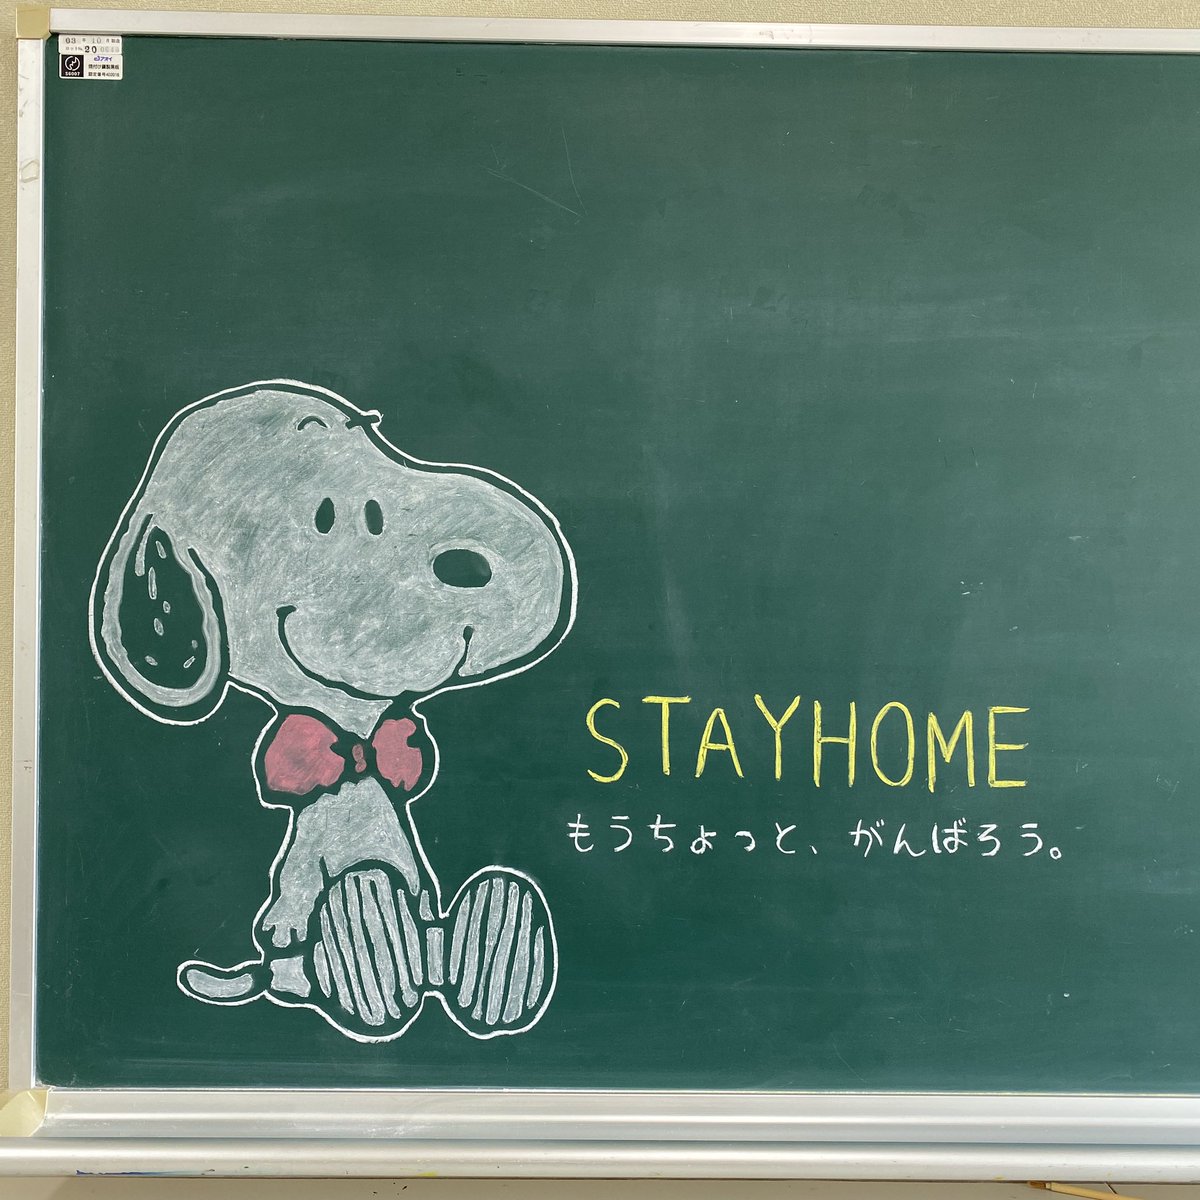 ワタセショー Su Twitter すぬーぴパイセンも もうちょいがんばろ 言うてはりますー Stayhome スヌーピー Snoopy 黒板アート